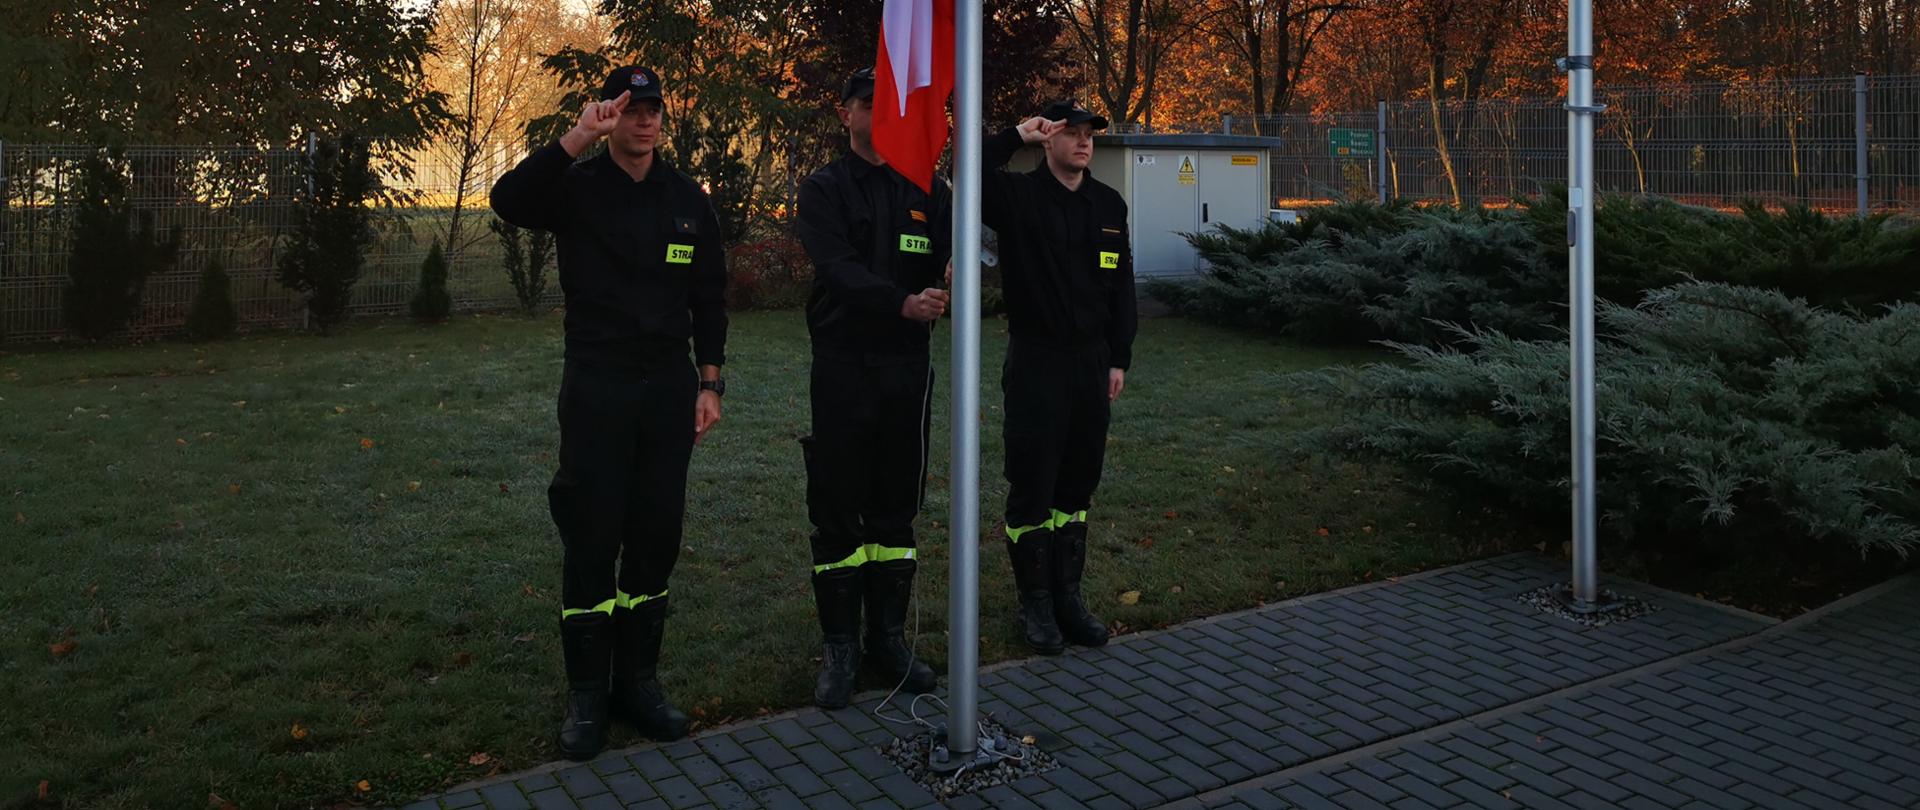 Na zdjęciu poczet flagowy przy maszcie 3 strażaków podczas wciągania flagi na maszt 